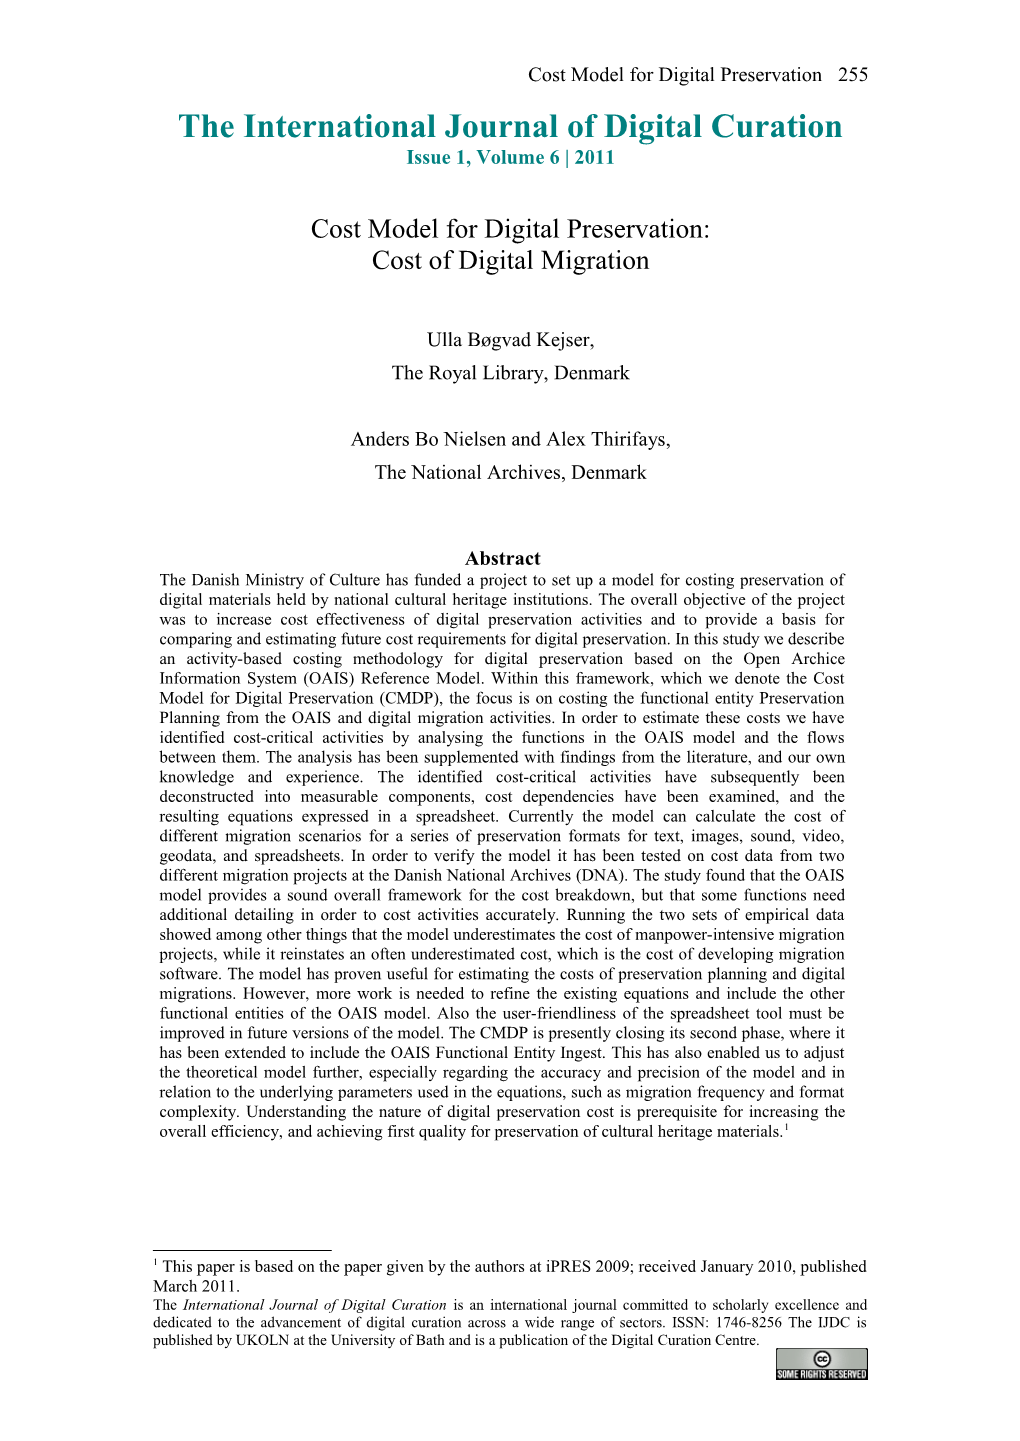 Cost Model for Digital Preservation: Cost of Digital Migration